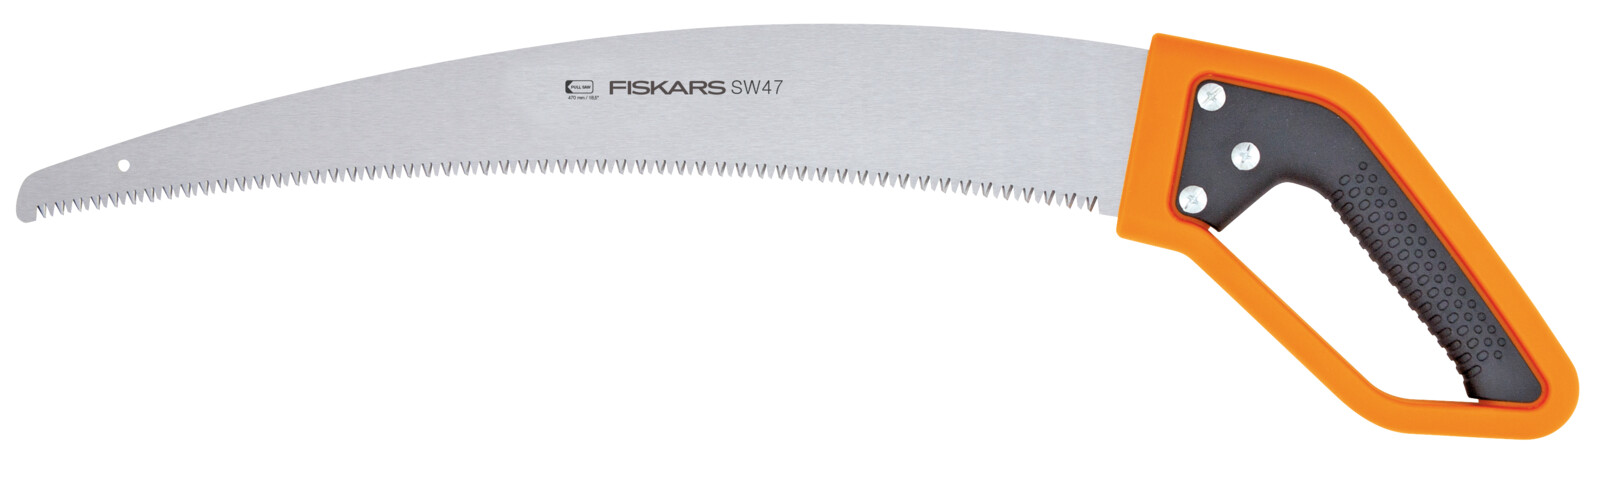 Ножовка по дереву Fiskars SW47 (1028375) в интернет-магазине, главное фото